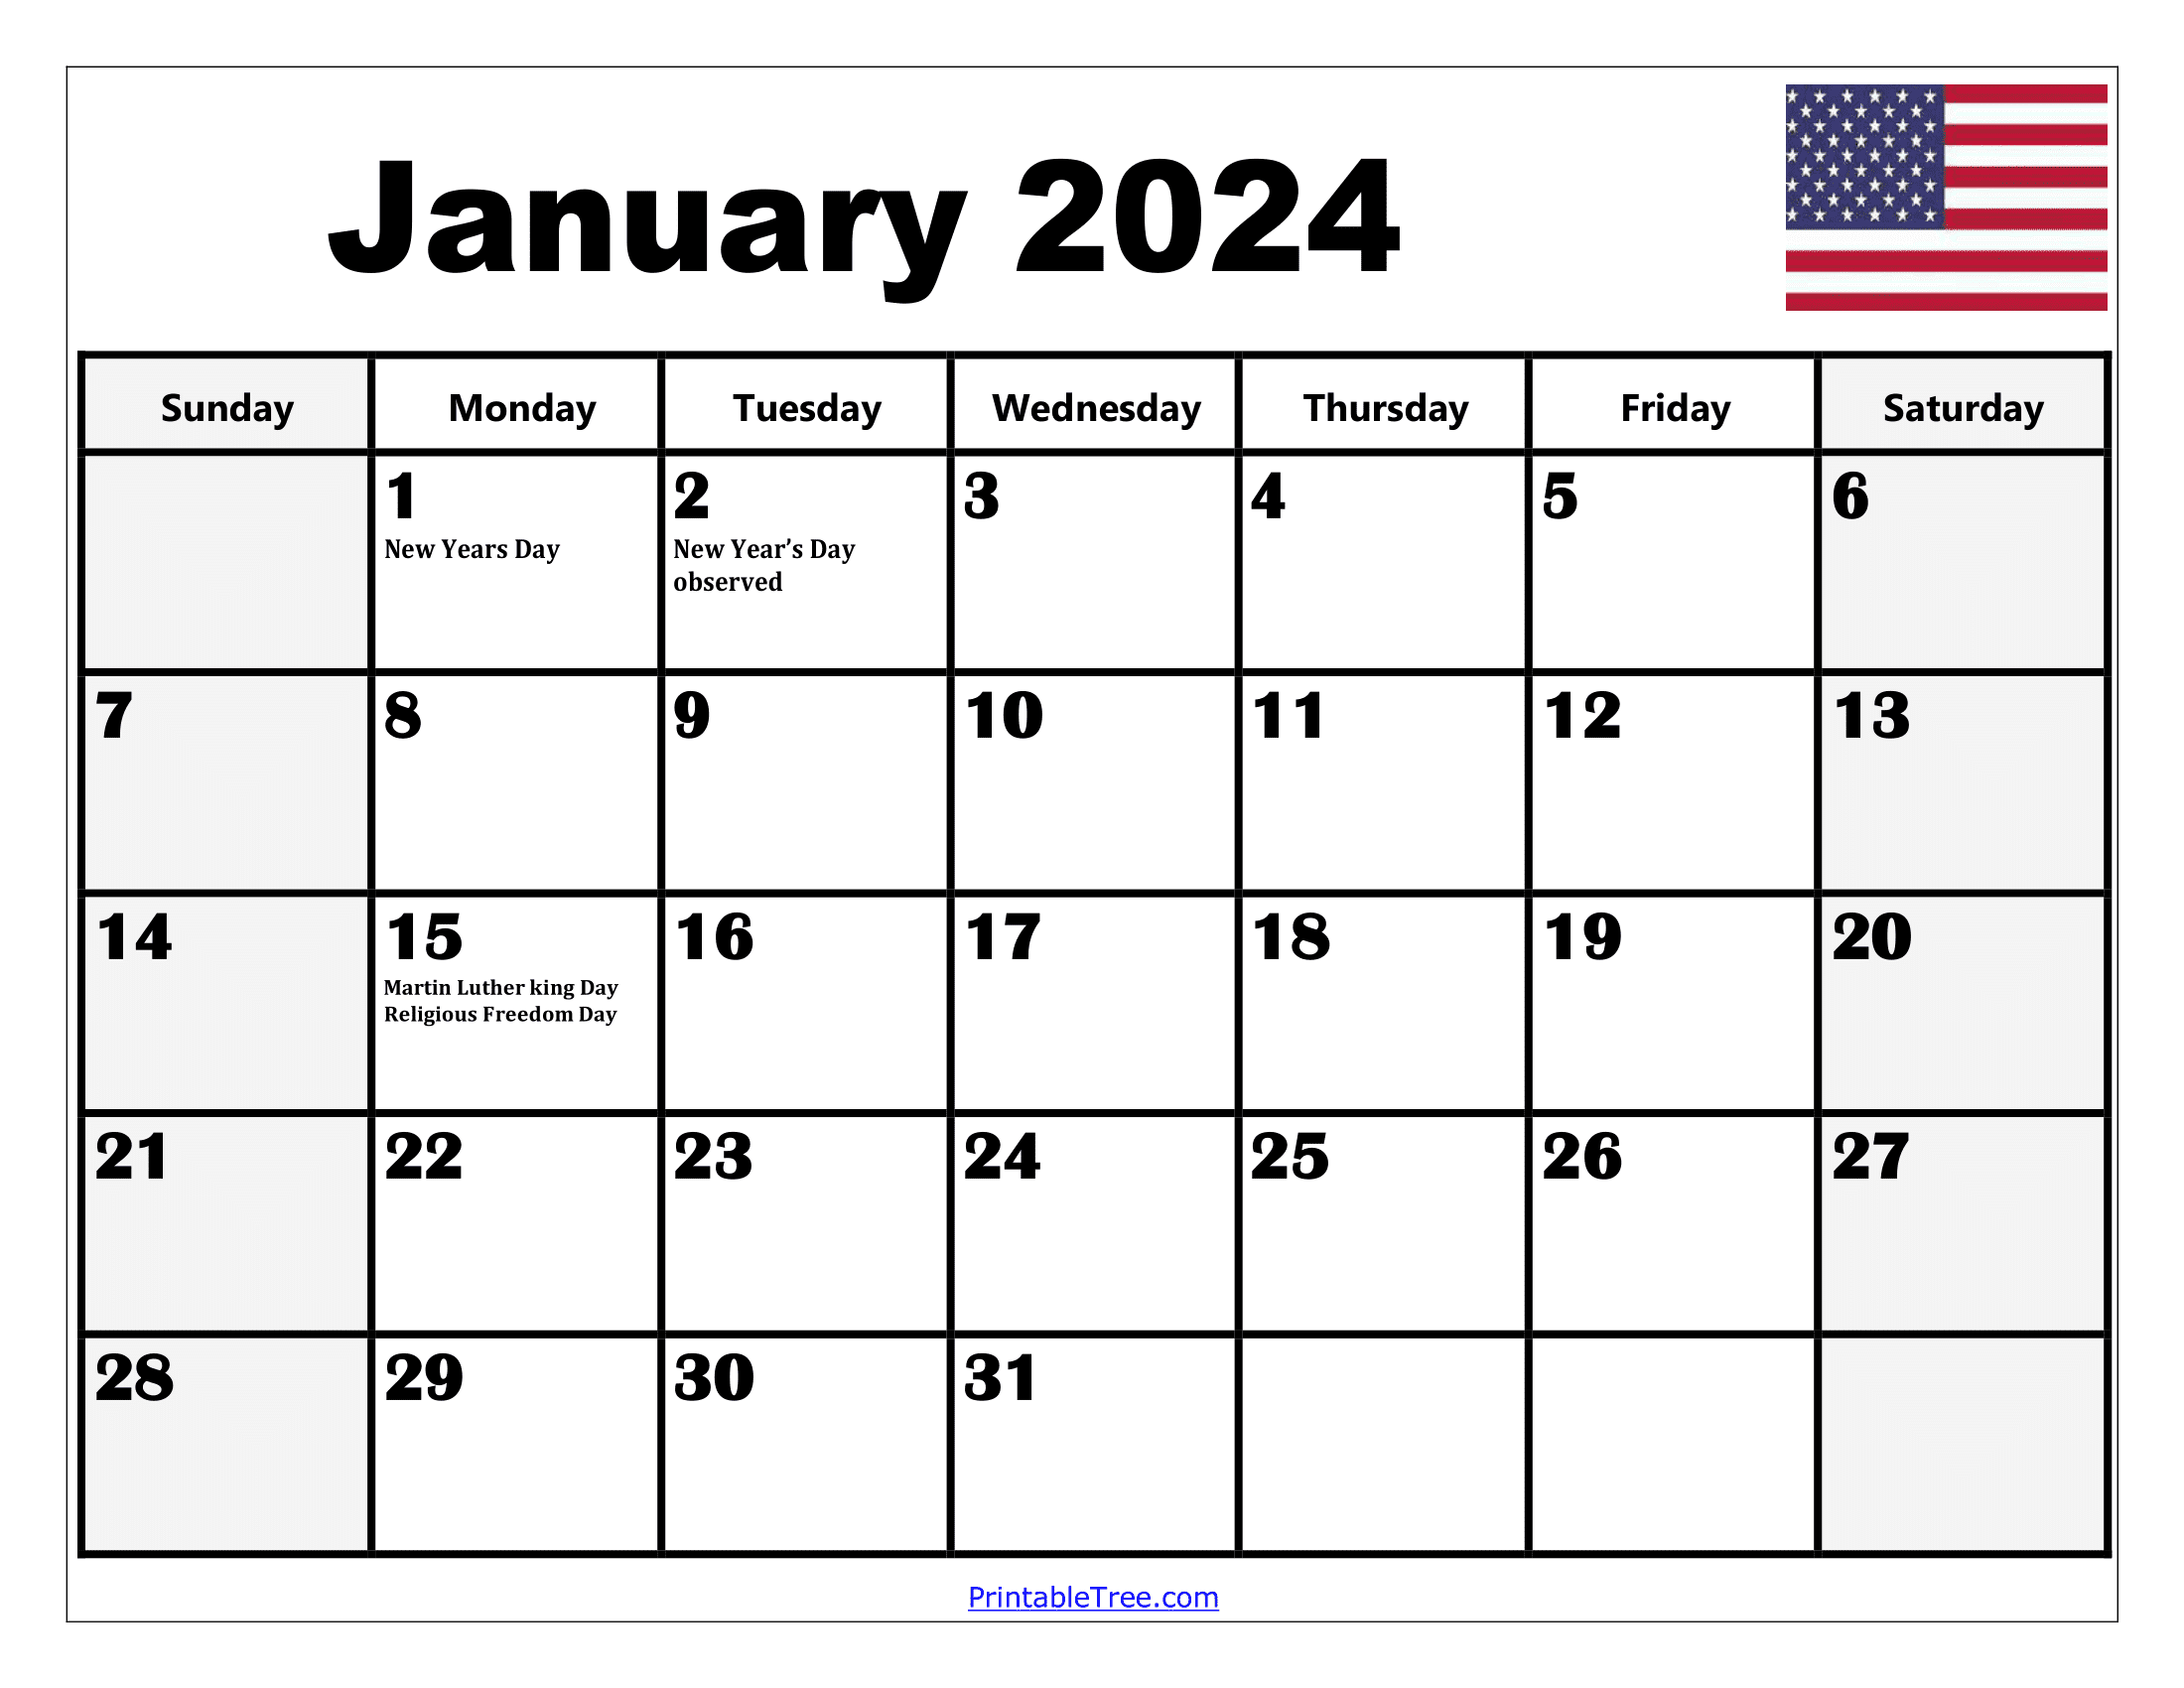 2024 Holiday Calendar Days Free Download Nov 2024 Calendar - Free Printable 2024 Calendar Template With Holidays